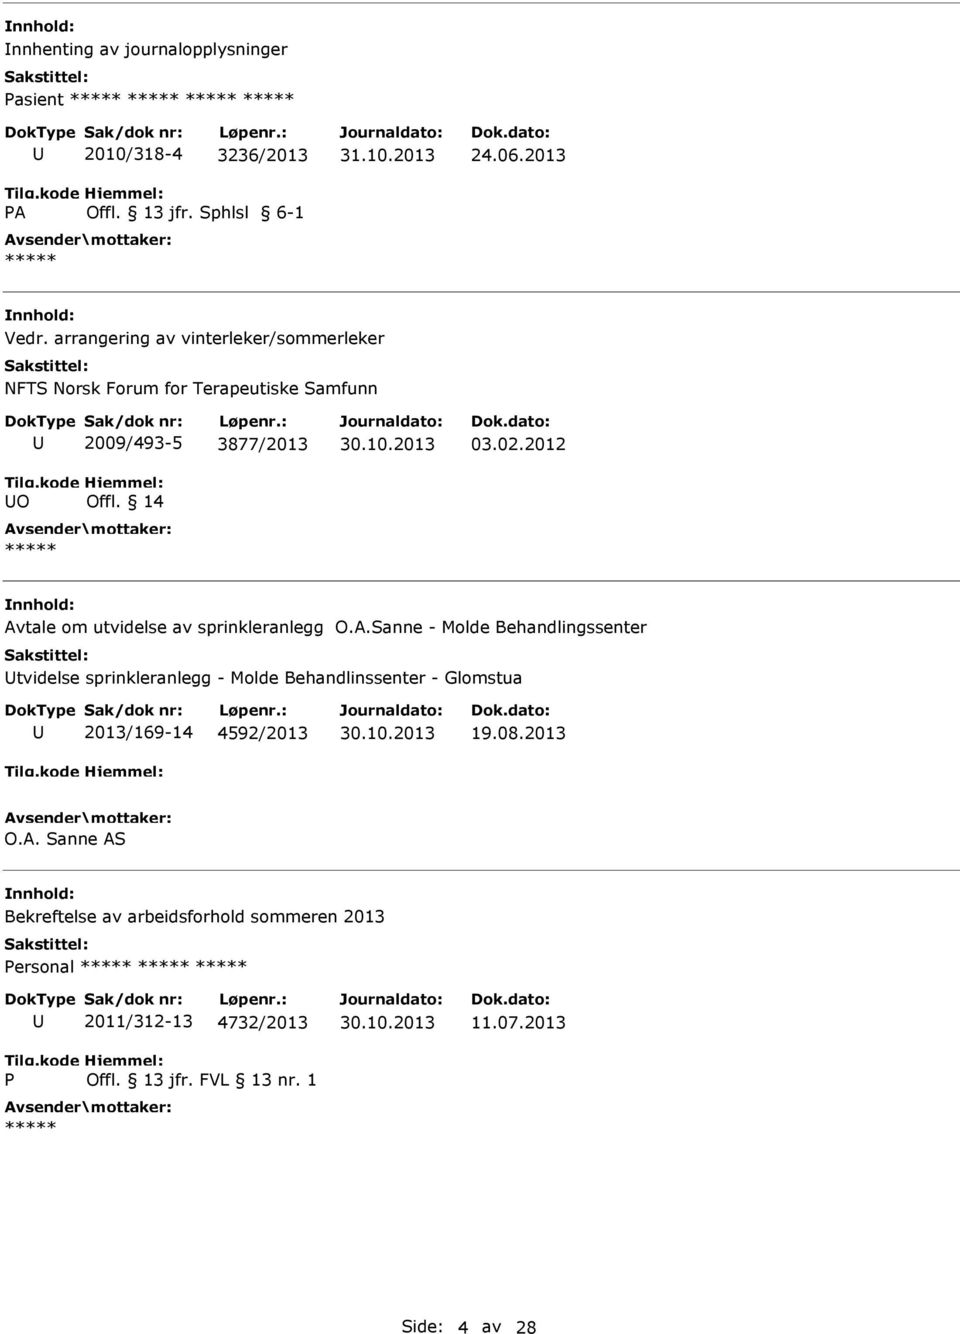 2012 Avtale om utvidelse av sprinkleranlegg O.A.Sanne - Molde Behandlingssenter tvidelse sprinkleranlegg - Molde Behandlinssenter - Glomstua 2013/169-14 4592/2013 30.